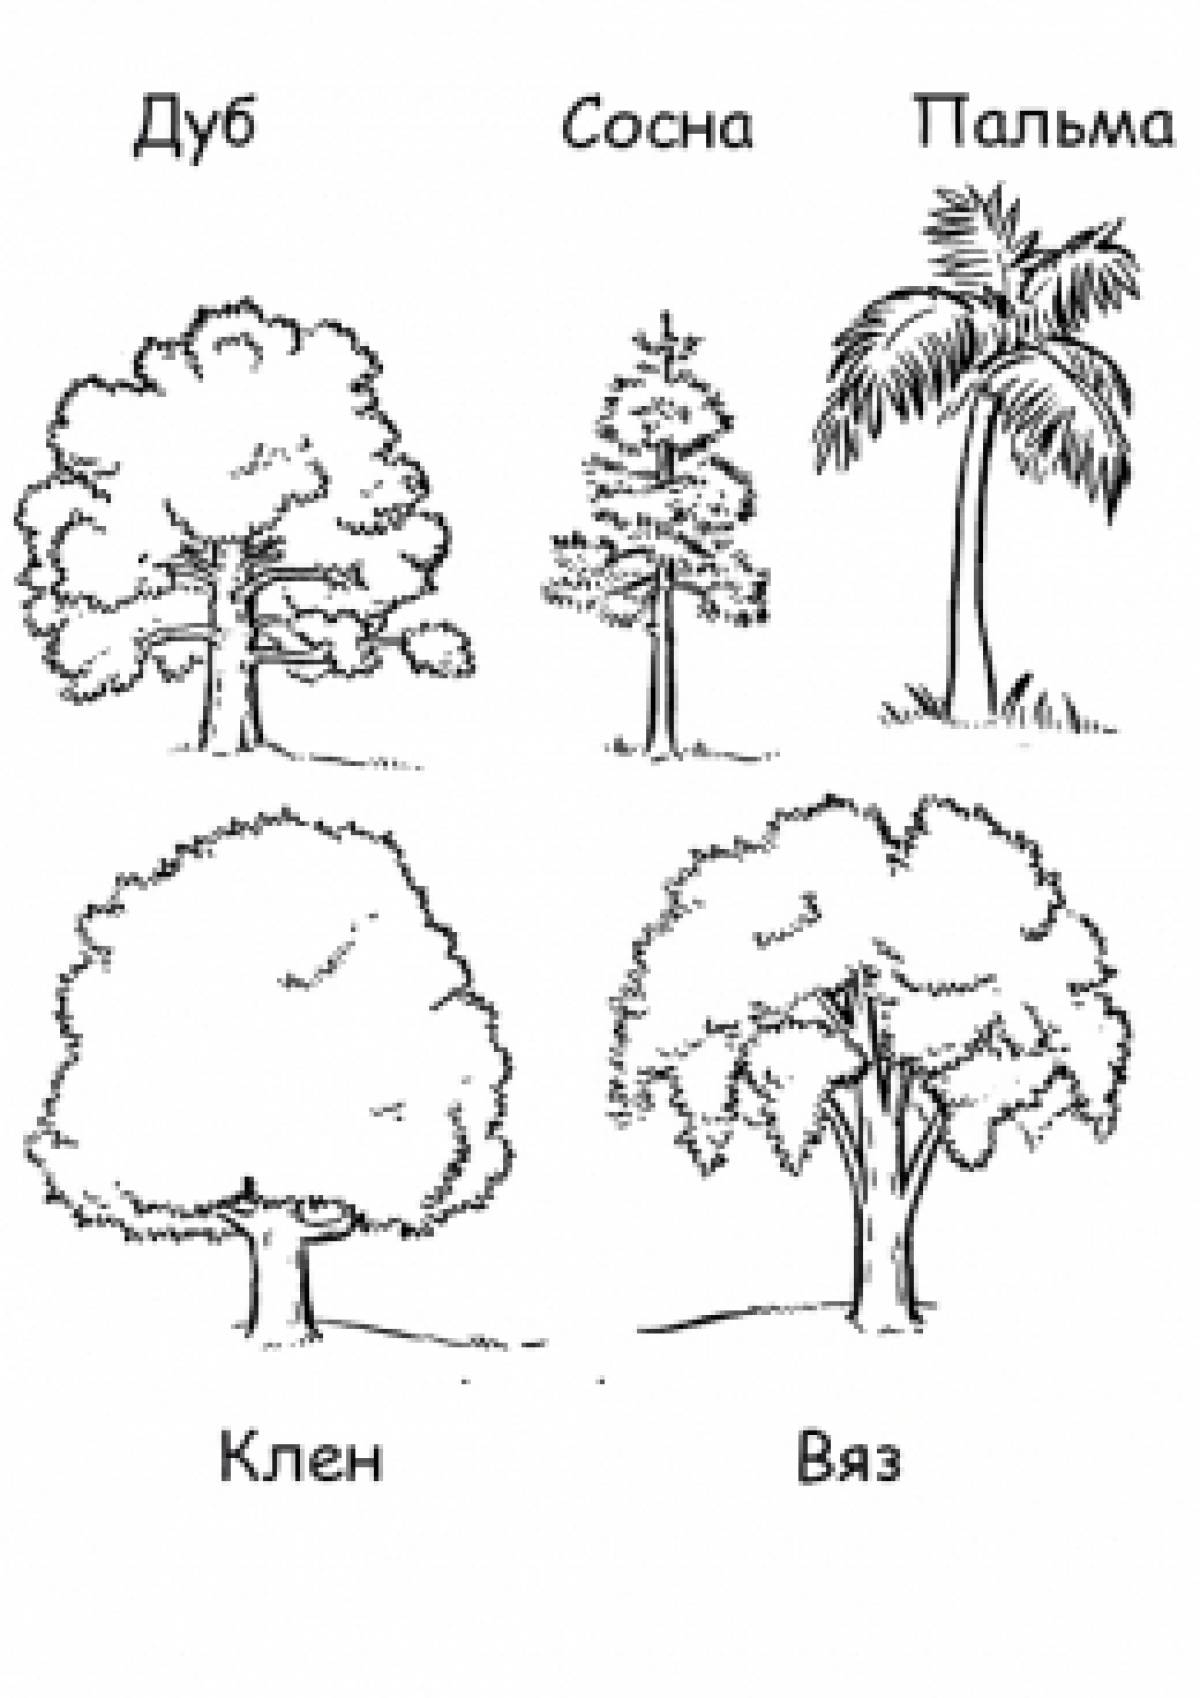 Tree types